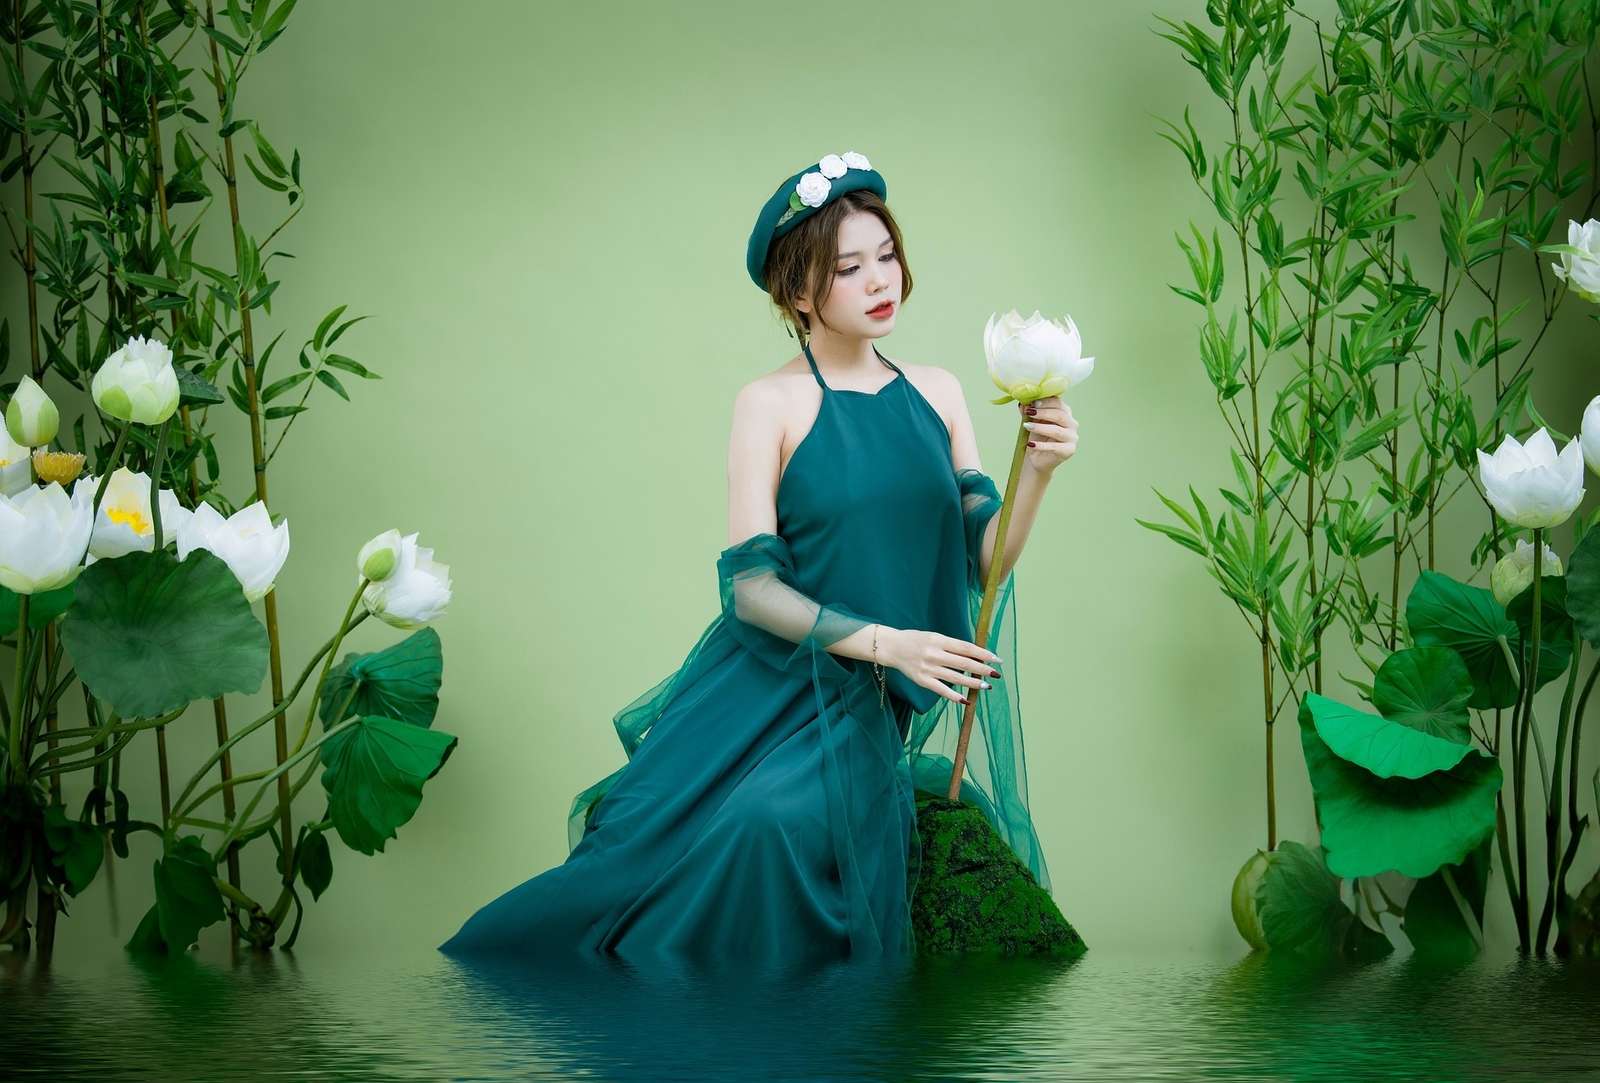 水の中に蓮の花を持つ緑のドレスを着たアジアの女性 ジグソーパズルオンライン